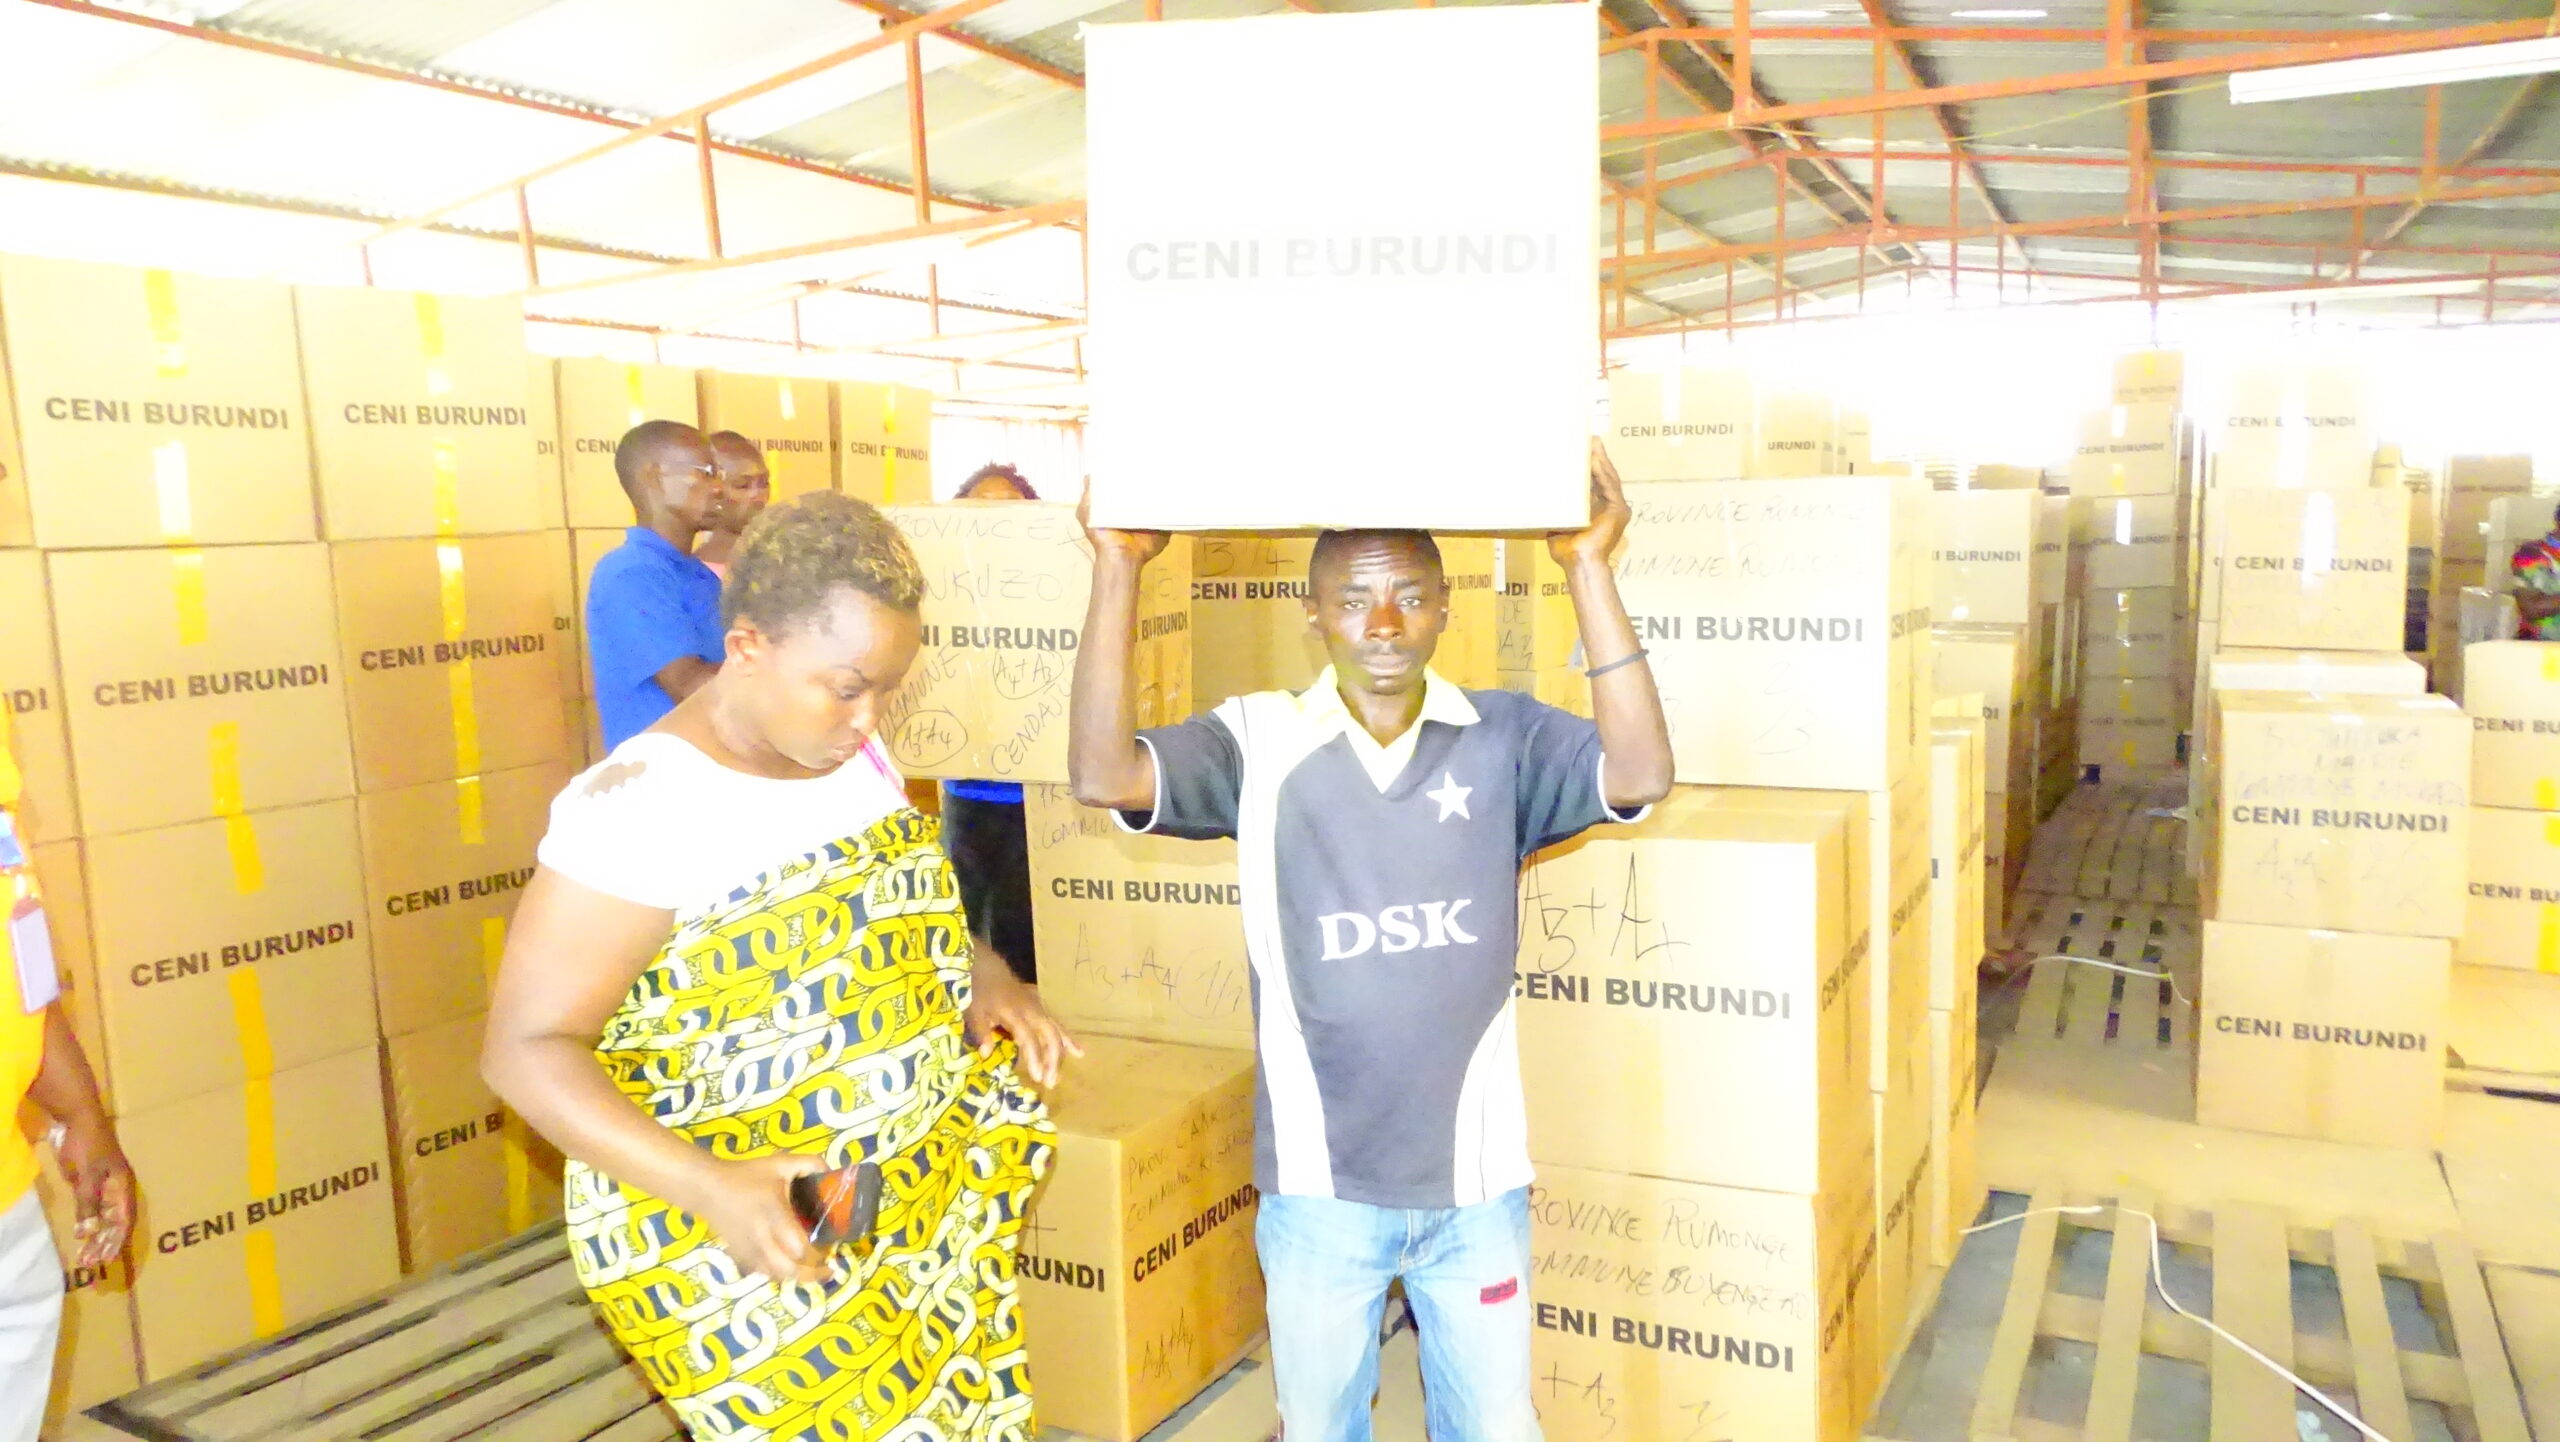  Redéploiement de l’entrepôt de la CENI vers les CEPI  du matériel électoral pour l’enrôlement partiel et affichage des listes électorales provisoires.